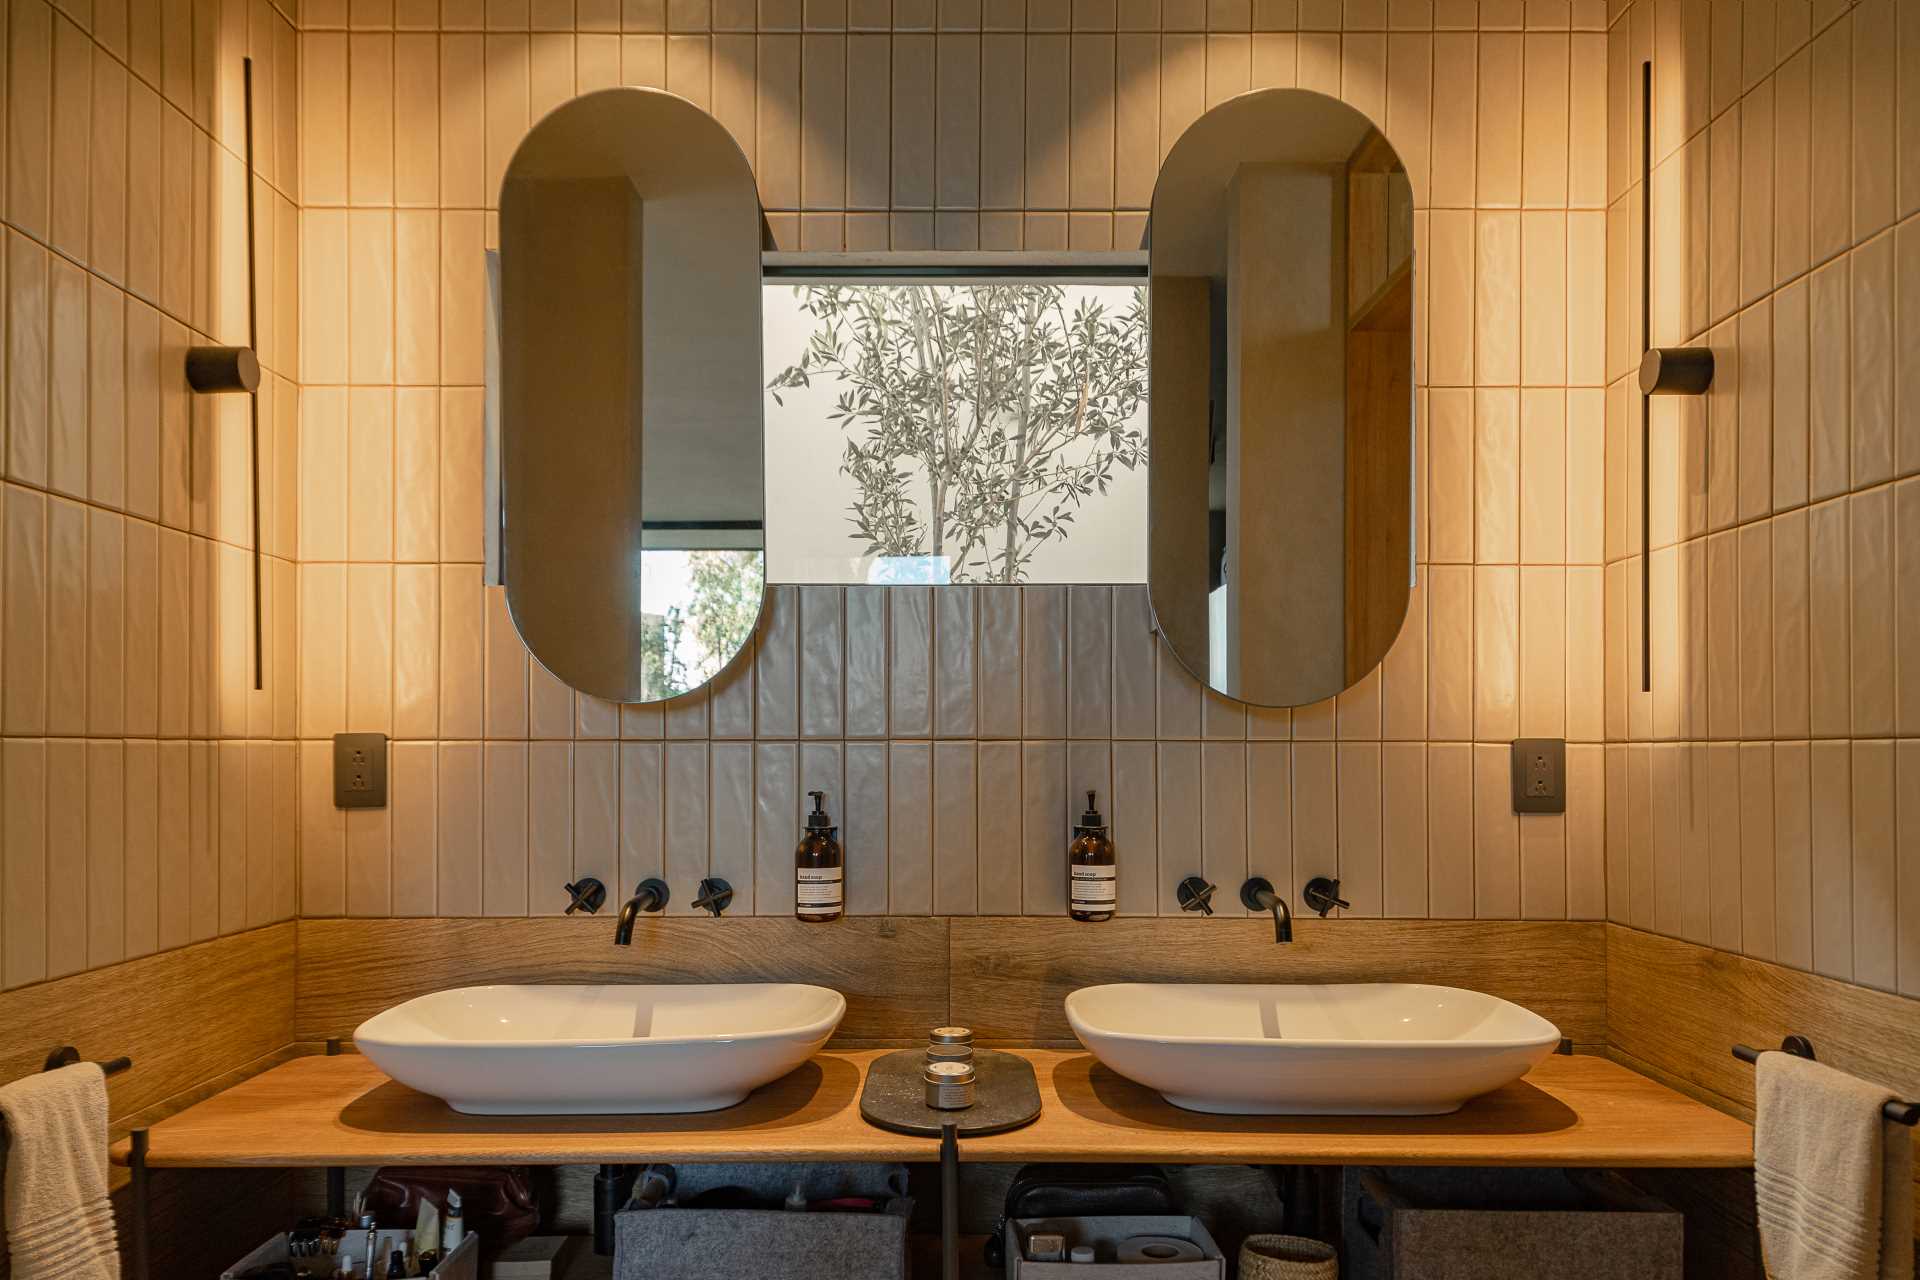 یک حمام مدرن با روشویی دو نفره، یک پنجره کوچک، آینه های قرصی شکل، کاشی دیواری که تا سقف می رود، و یک دوش با کاشی تیره تر.